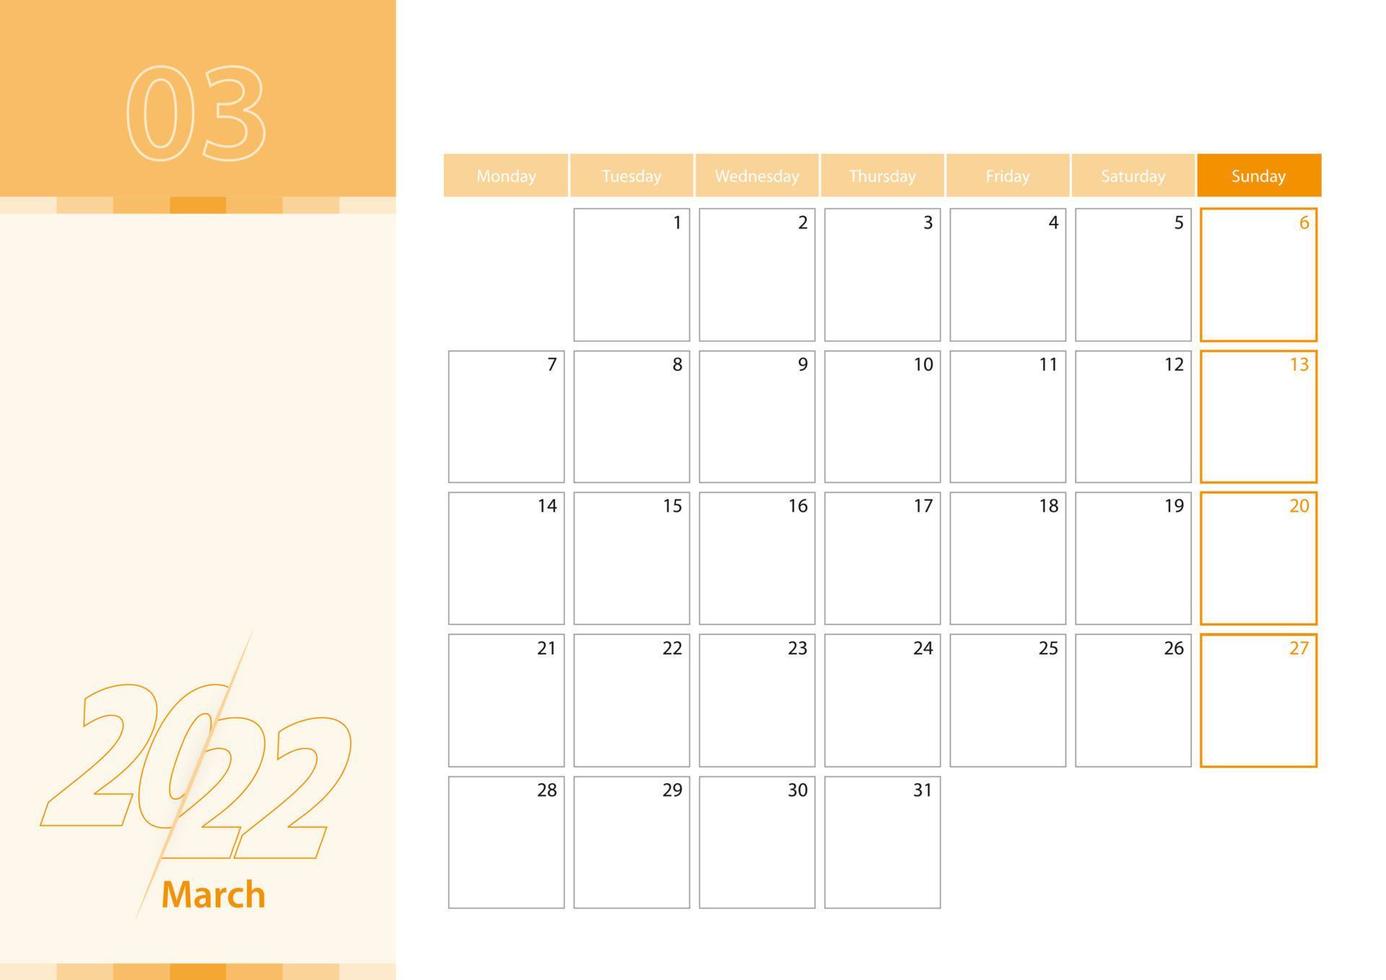 planificateur horizontal pour mars 2022 dans la palette de couleurs orange. la semaine commence le lundi. un calendrier mural dans un style minimaliste. vecteur